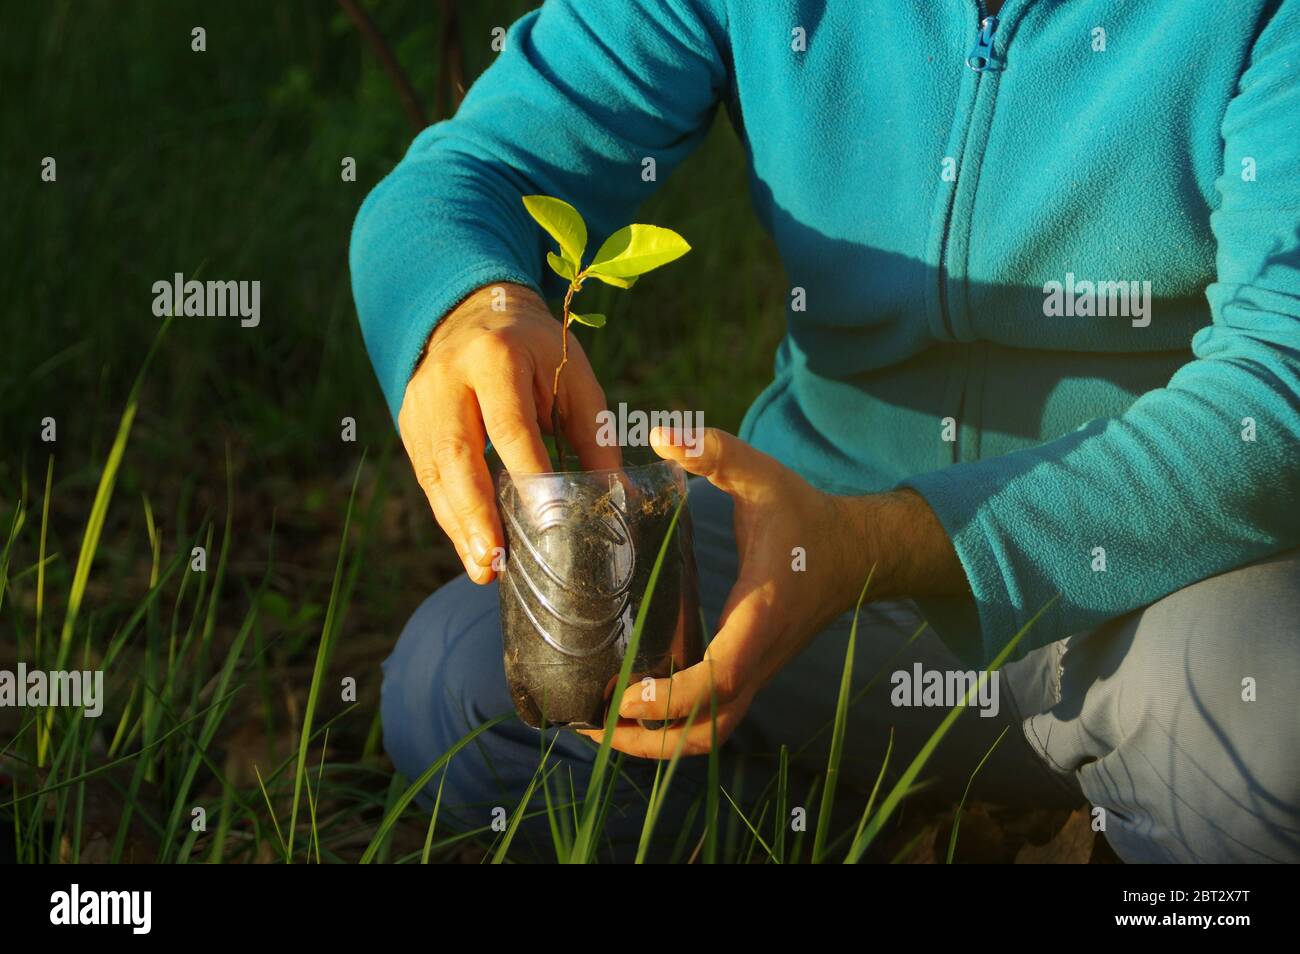 Concetto di ecologia. Coltivazione biologica di piante. Piantando una pianta giovane in un contenitore riciclato. Cura per l'ambiente naturale. Foto Stock